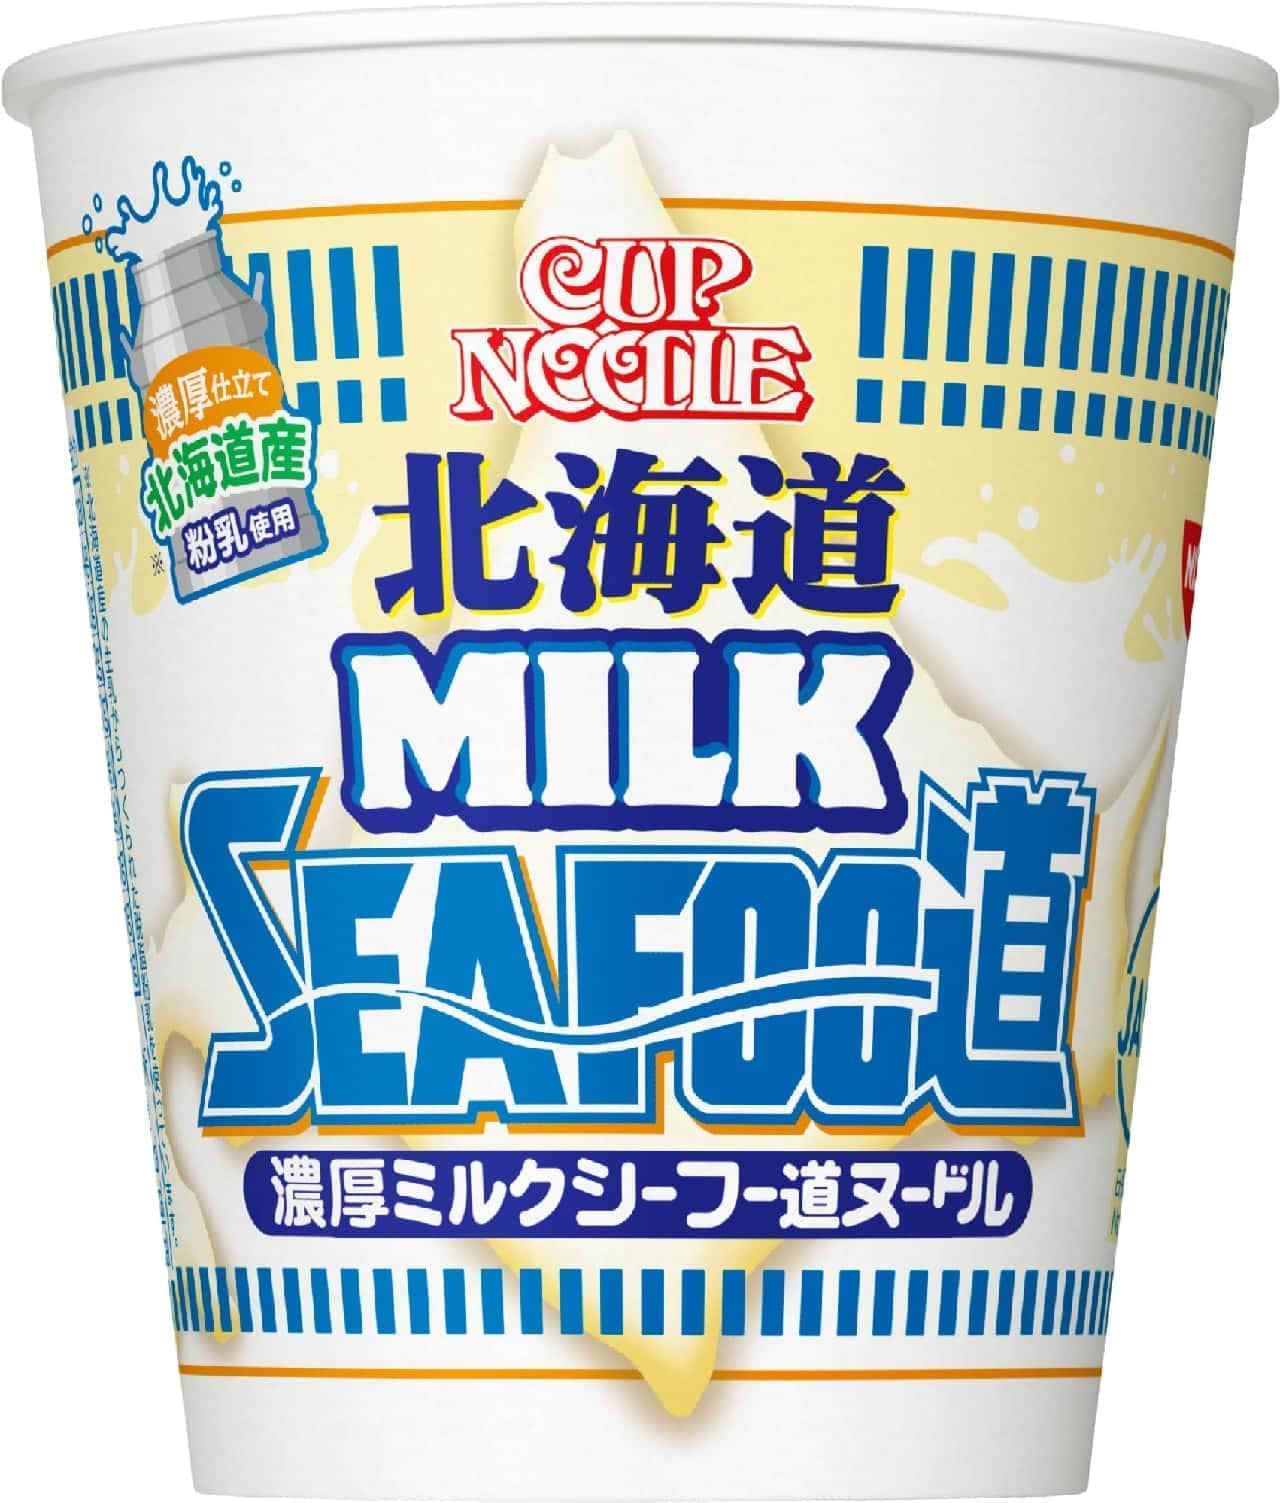 Cup Noodles Hokkaido Rich Milk Shifu Road Noodles